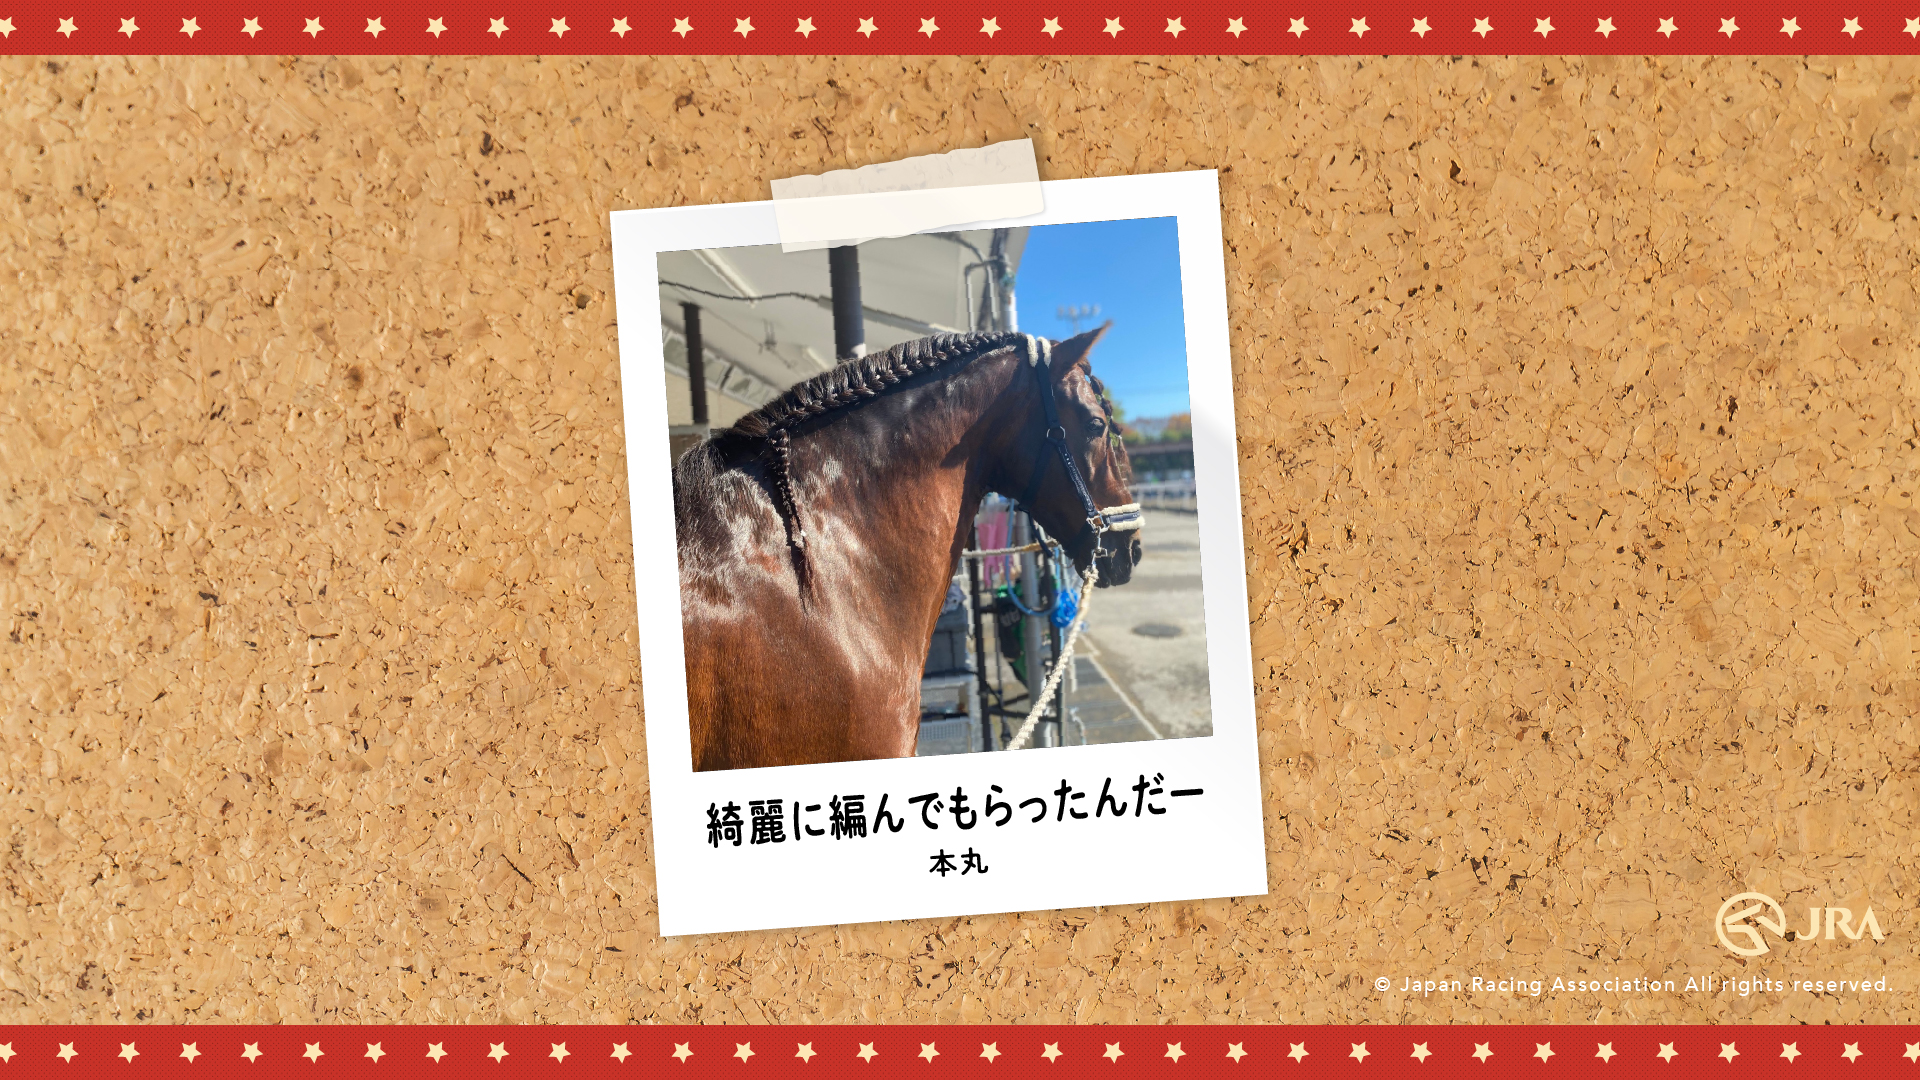 お馬さんのオフショット Jra 東京競馬場乗馬センター